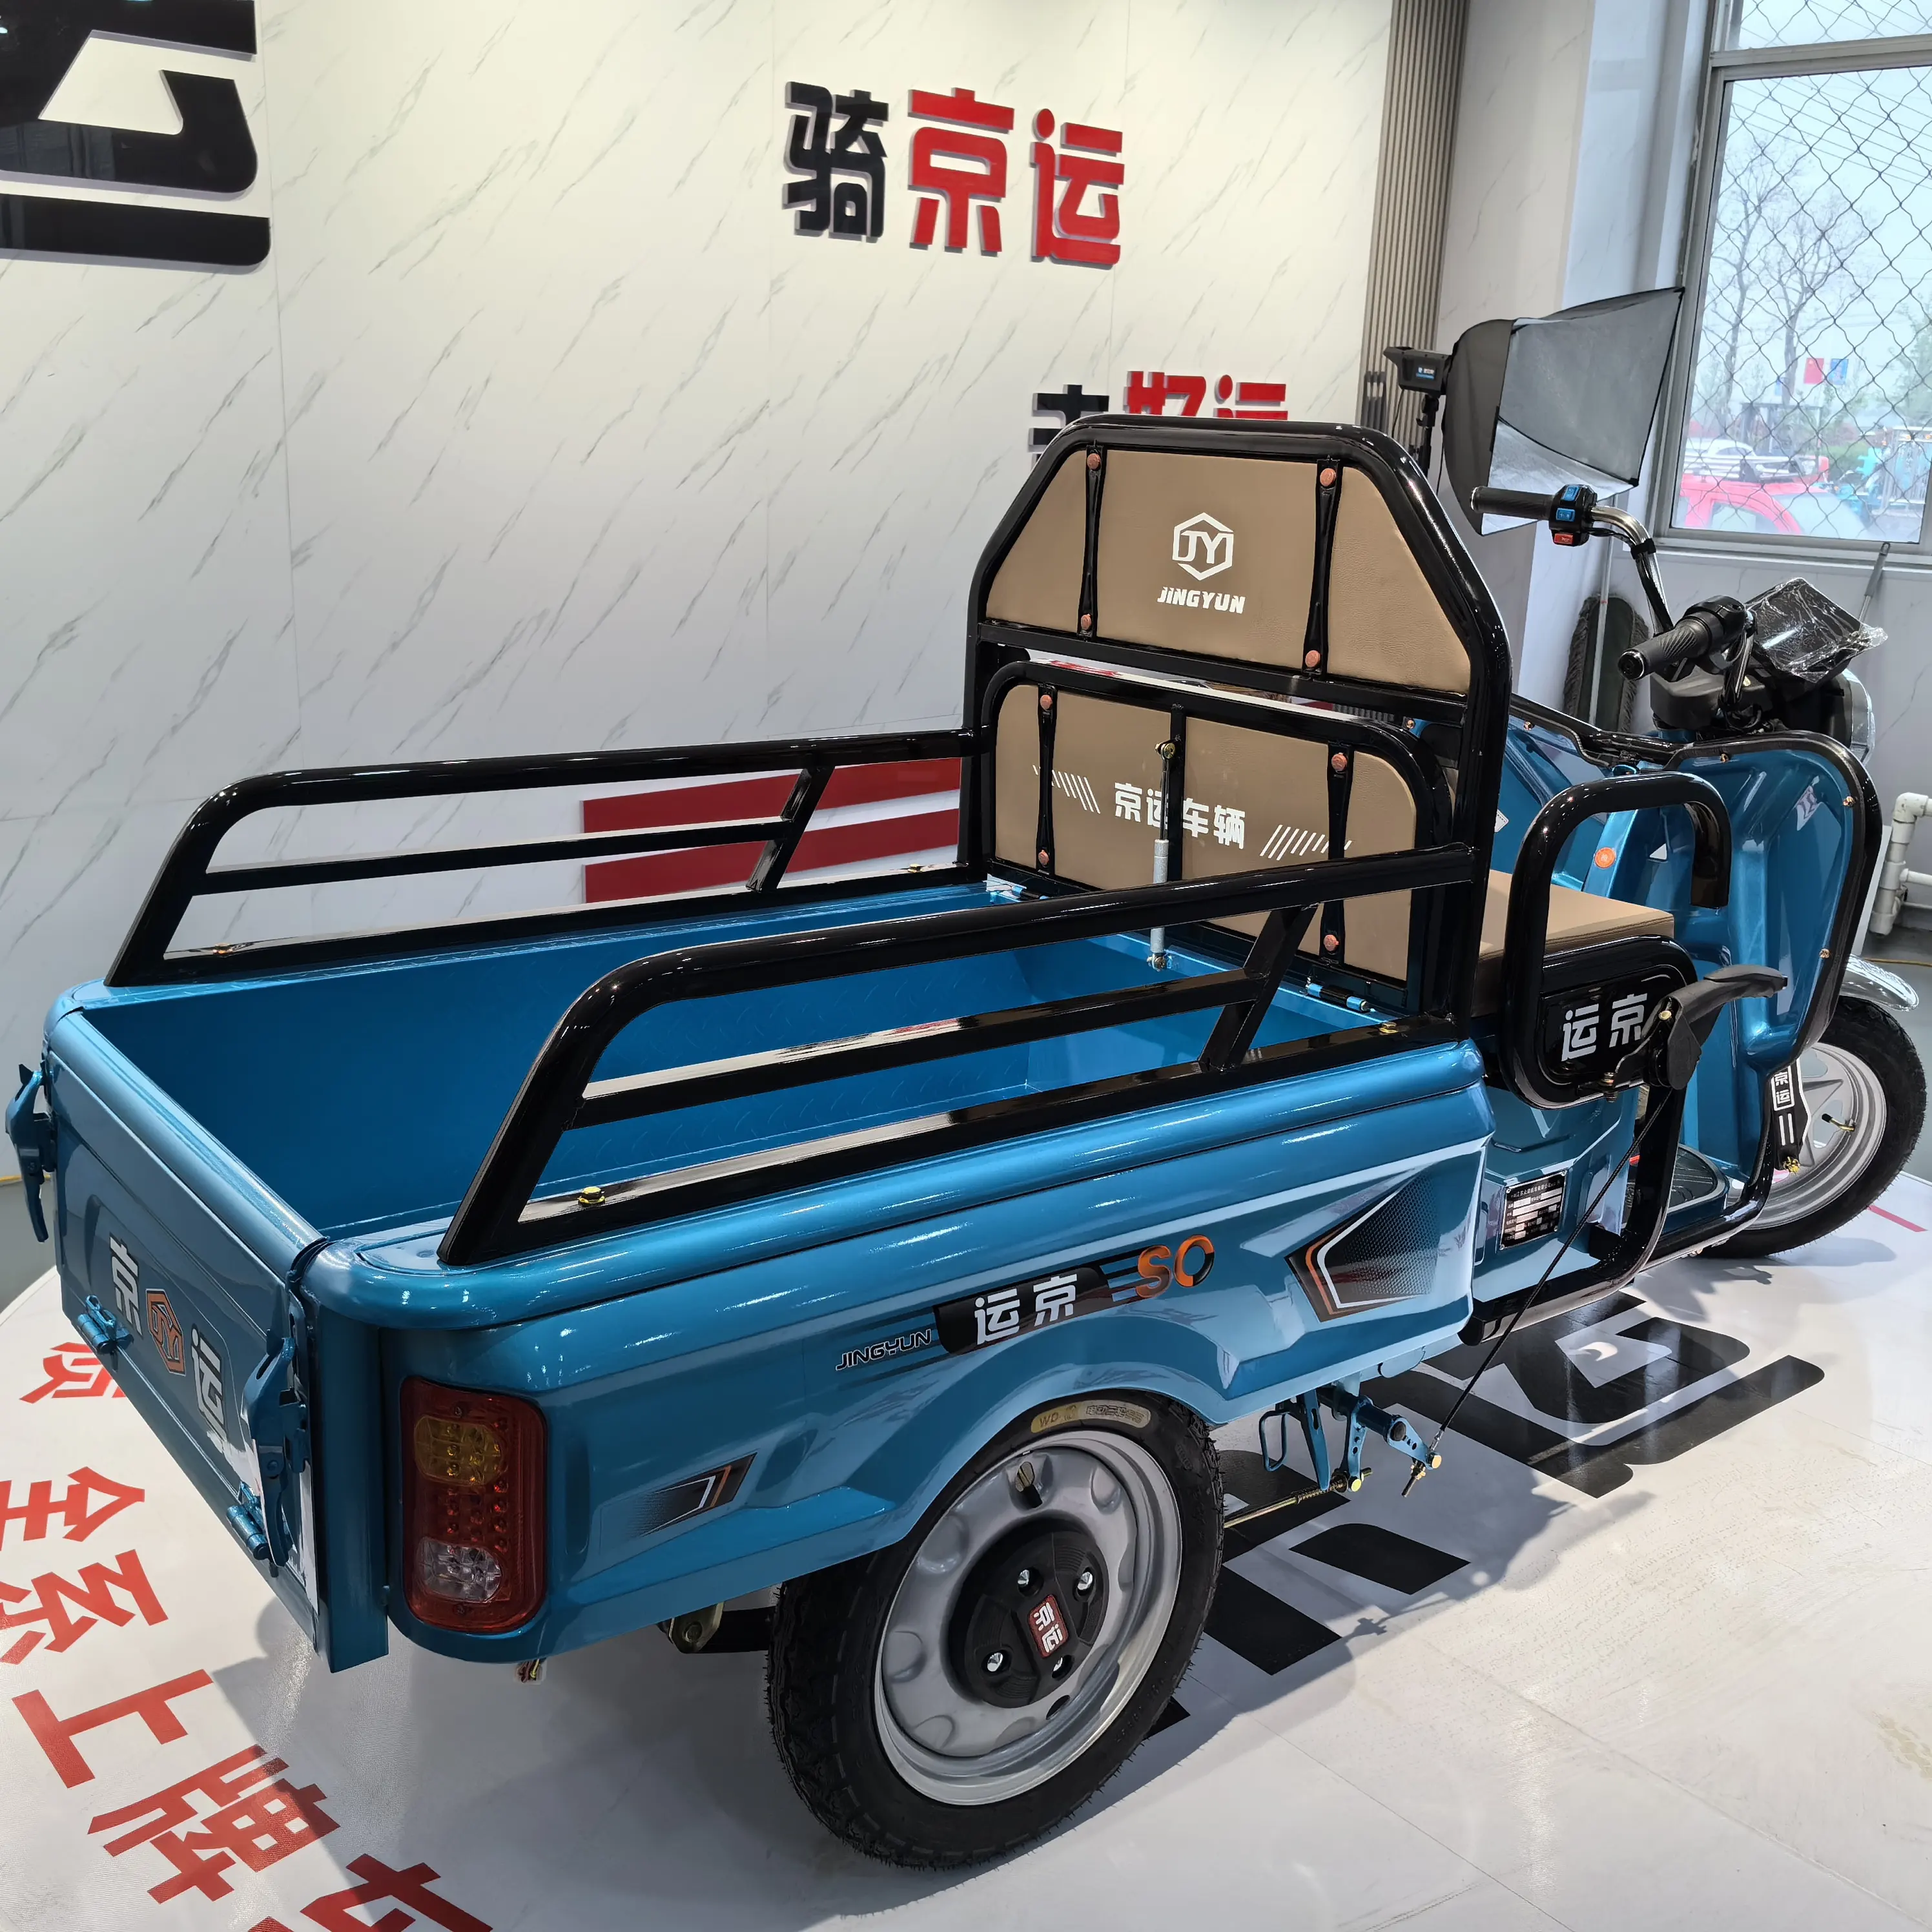 500 W China Venda Quente Bicicleta Elétrica de Três Rodas para Adultos Triciclos Idosos Pessoas Lazer Carro Bicicleta Elétrica 3 Rodas